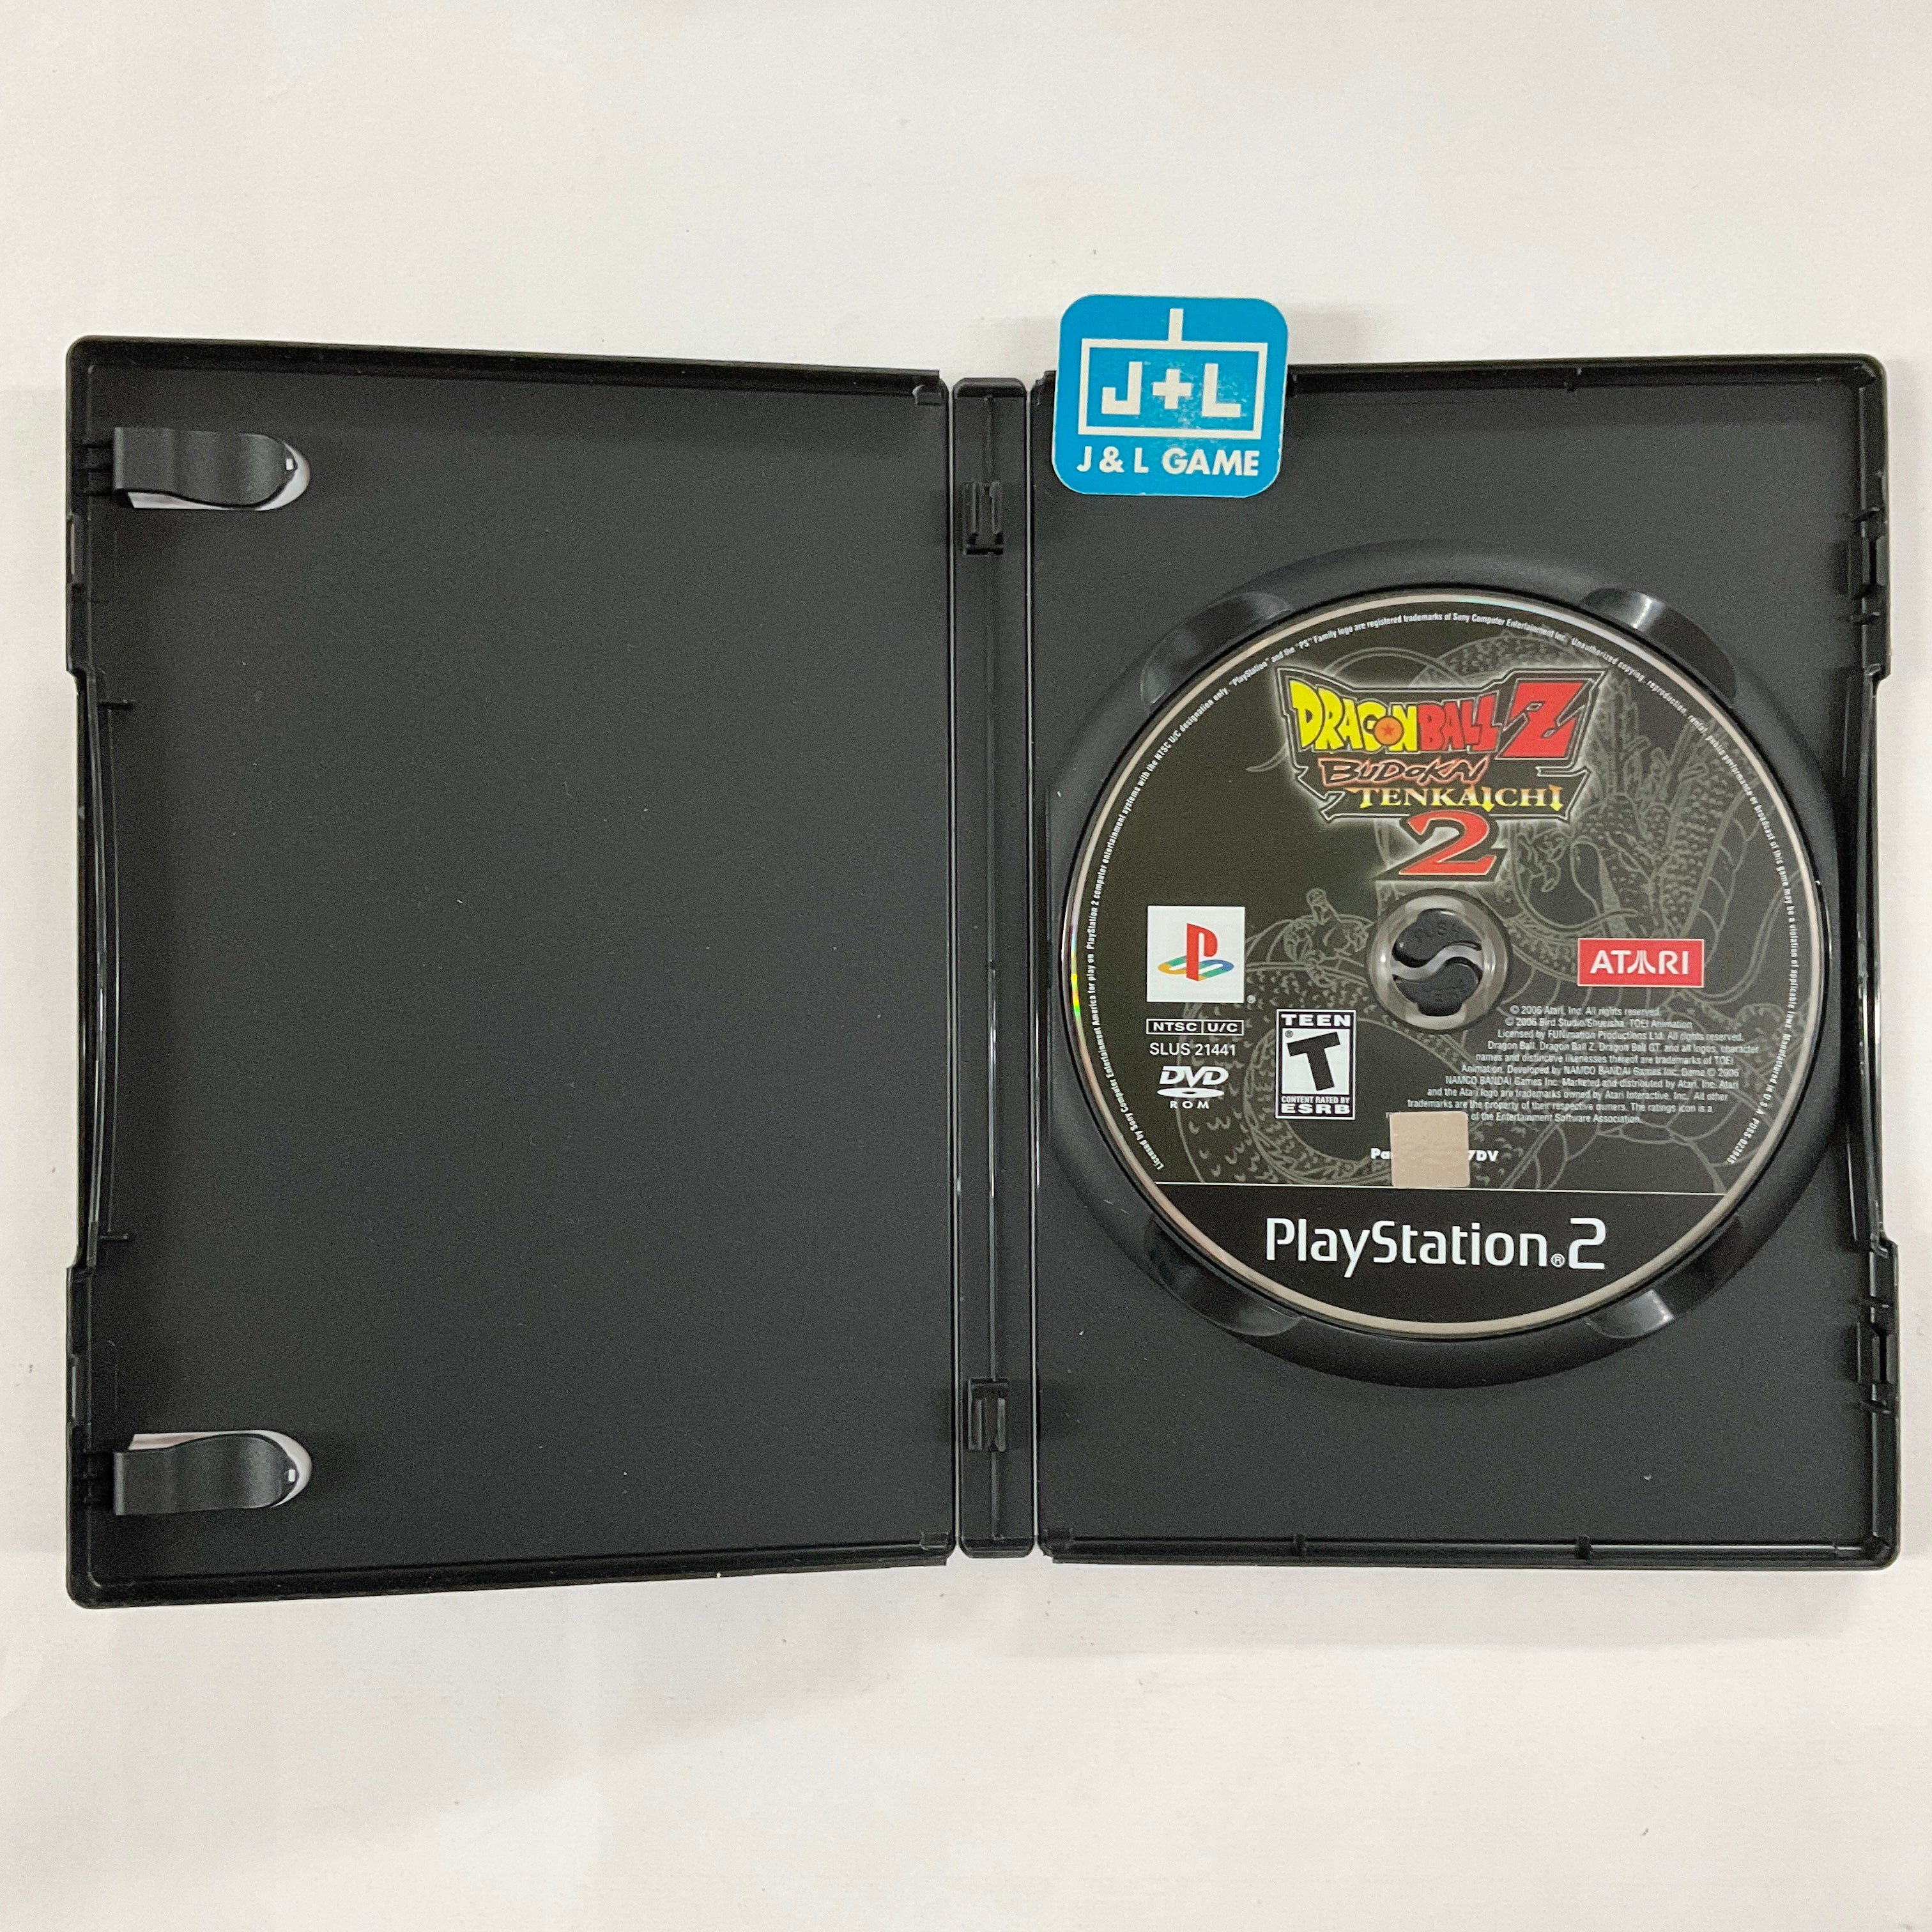 Dragon Ball Z: Budokai Tenkaichi 2 - (PS2) PlayStation 2 [Pre-Owned] Video Games Atari SA   